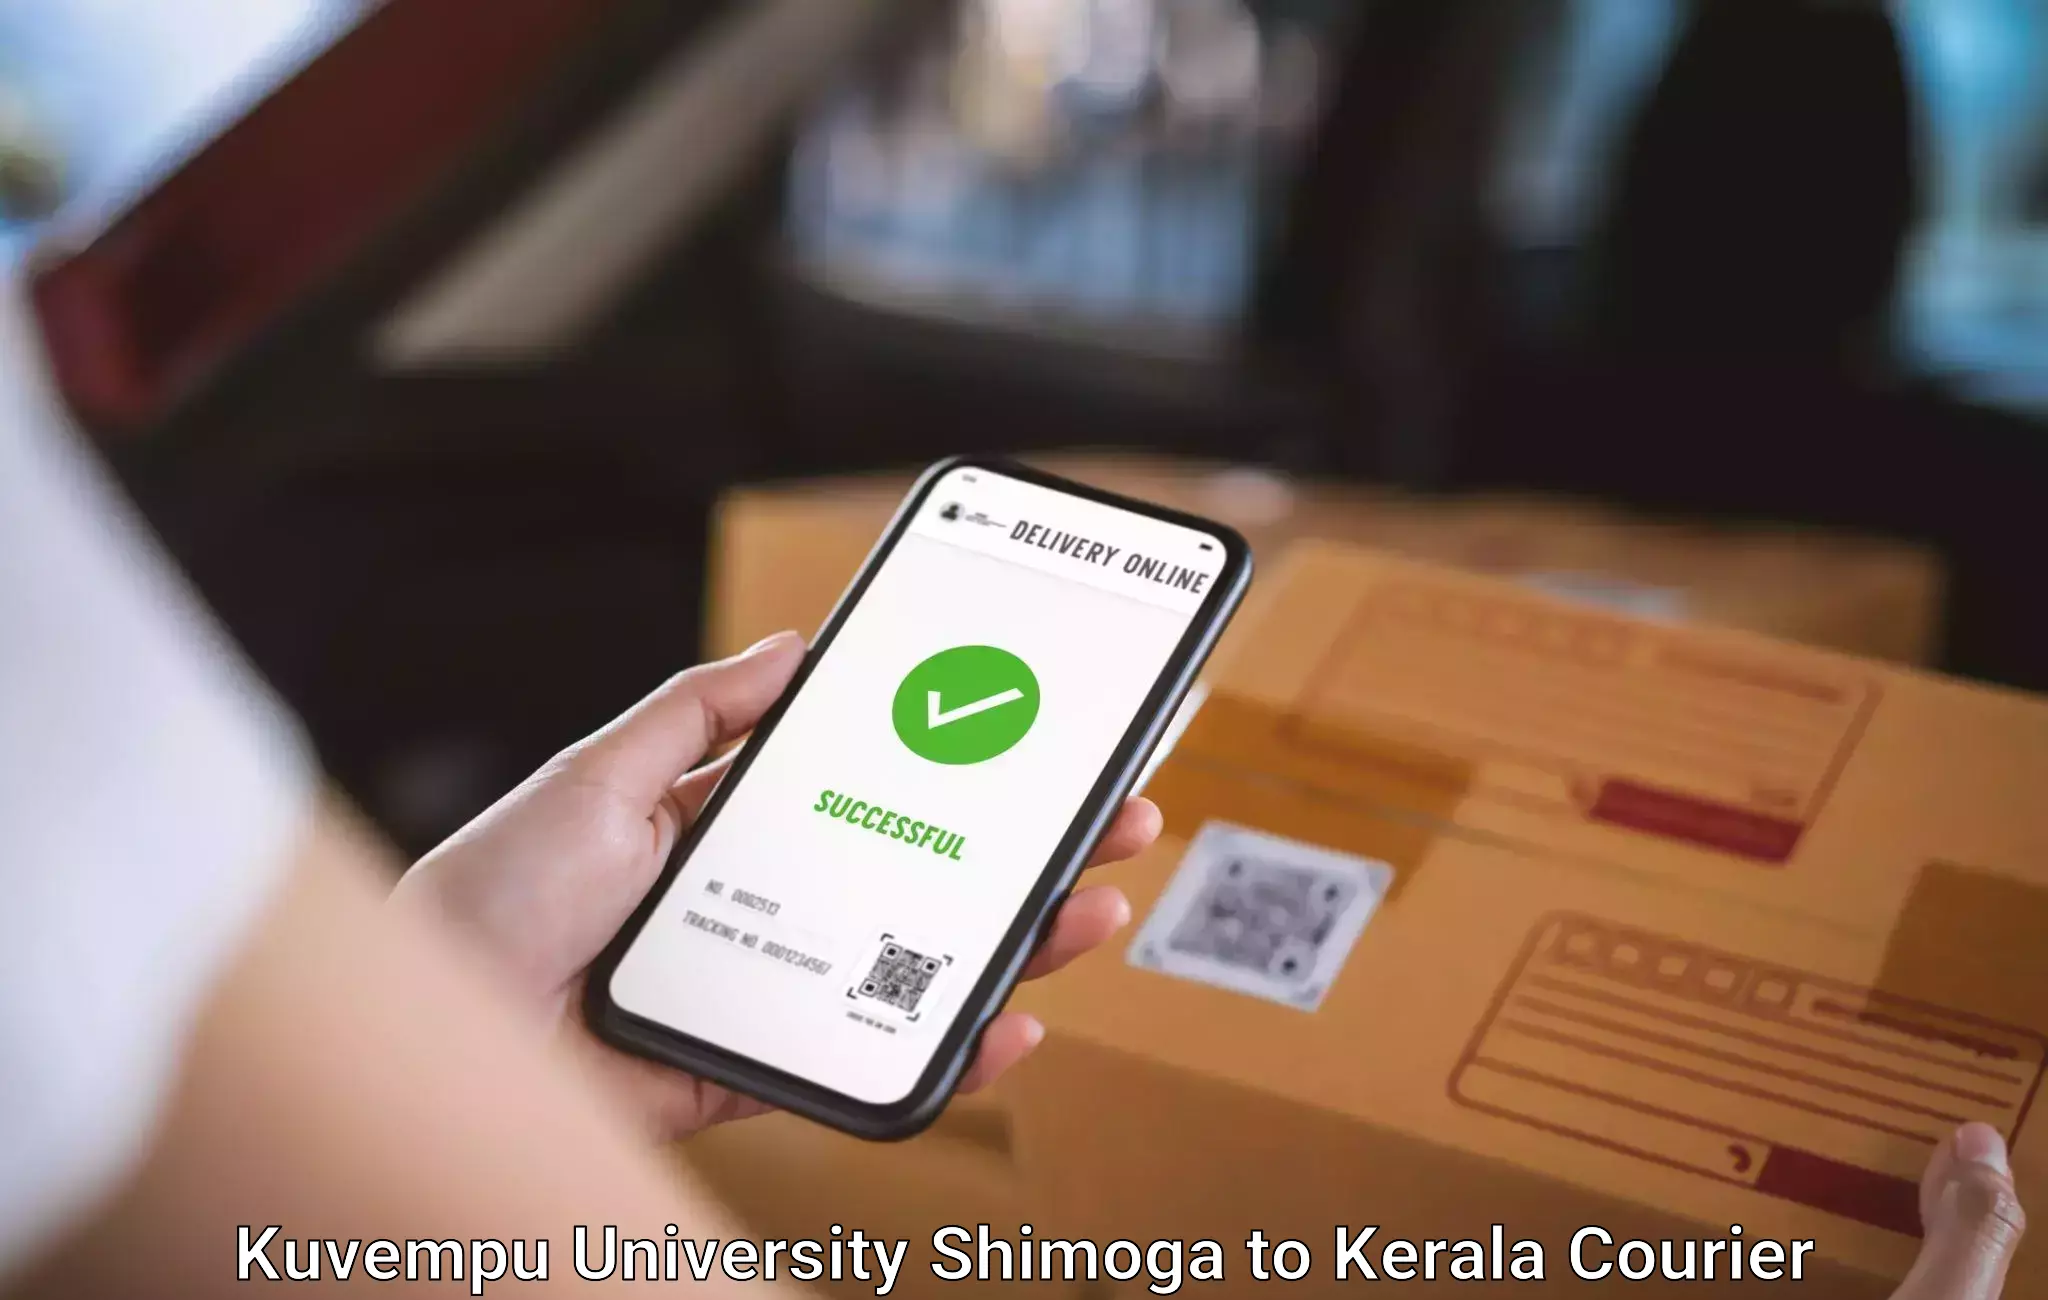 Baggage transport scheduler Kuvempu University Shimoga to Cochin